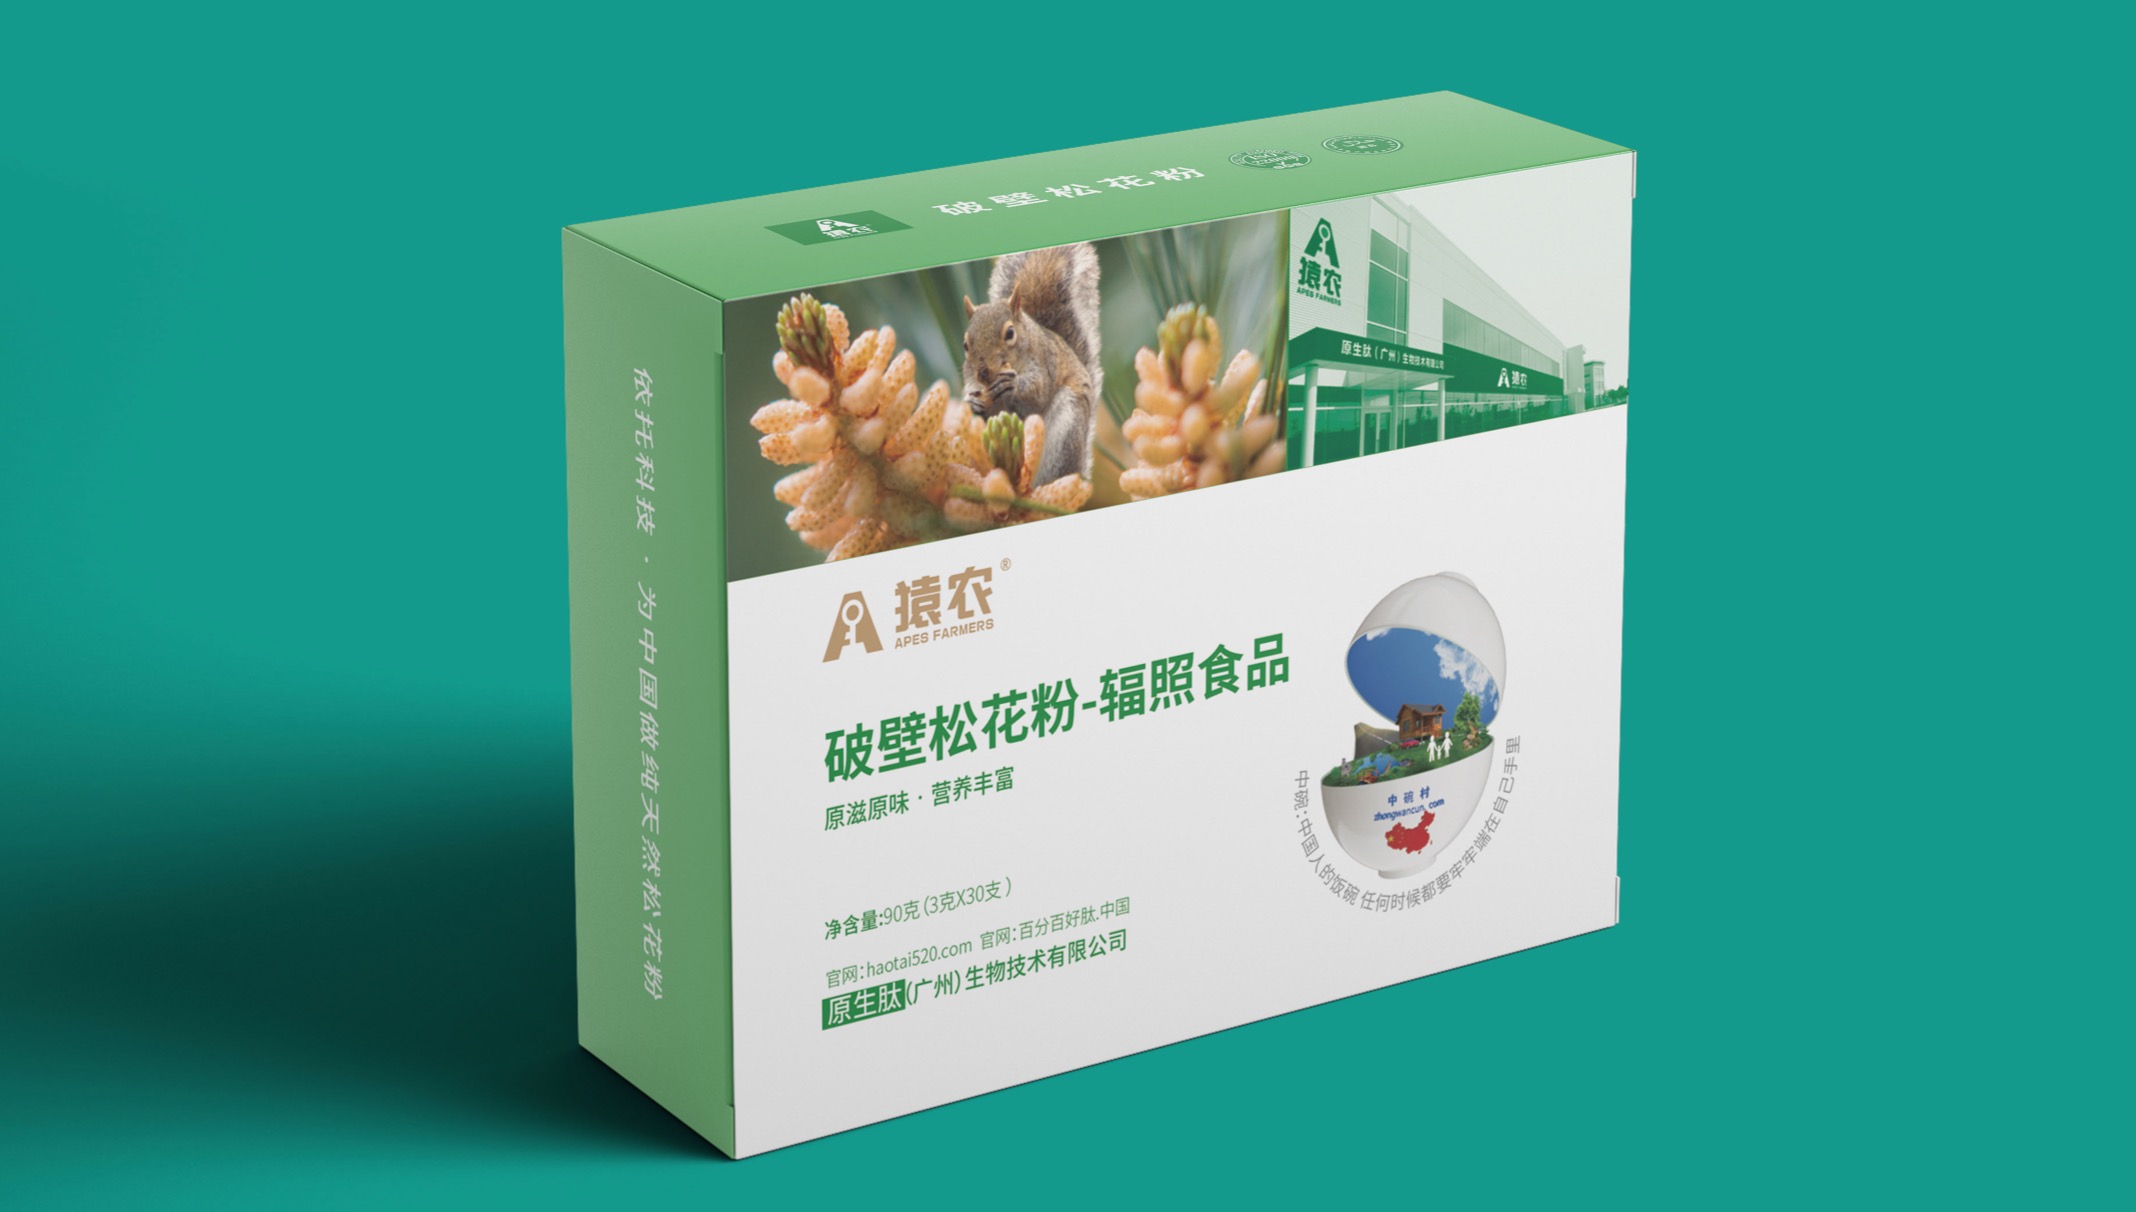 猿農生物科技品牌包裝設計